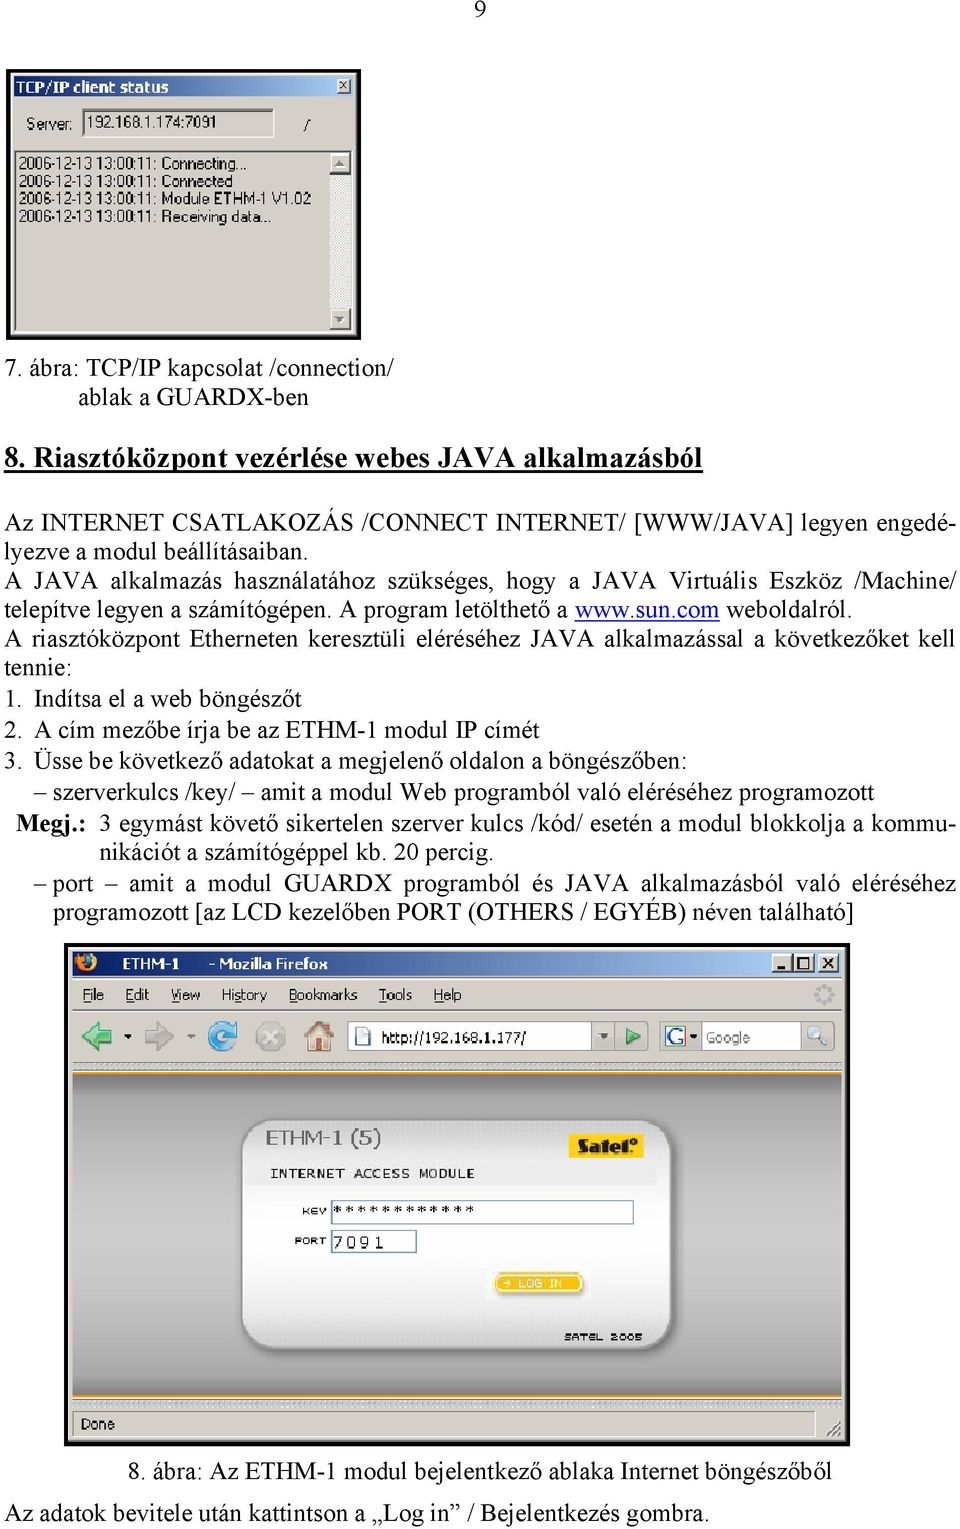 A JAVA alkalmazás használatához szükséges, hogy a JAVA Virtuális Eszköz /Machine/ telepítve legyen a számítógépen. A program letölthető a www.sun.com weboldalról.